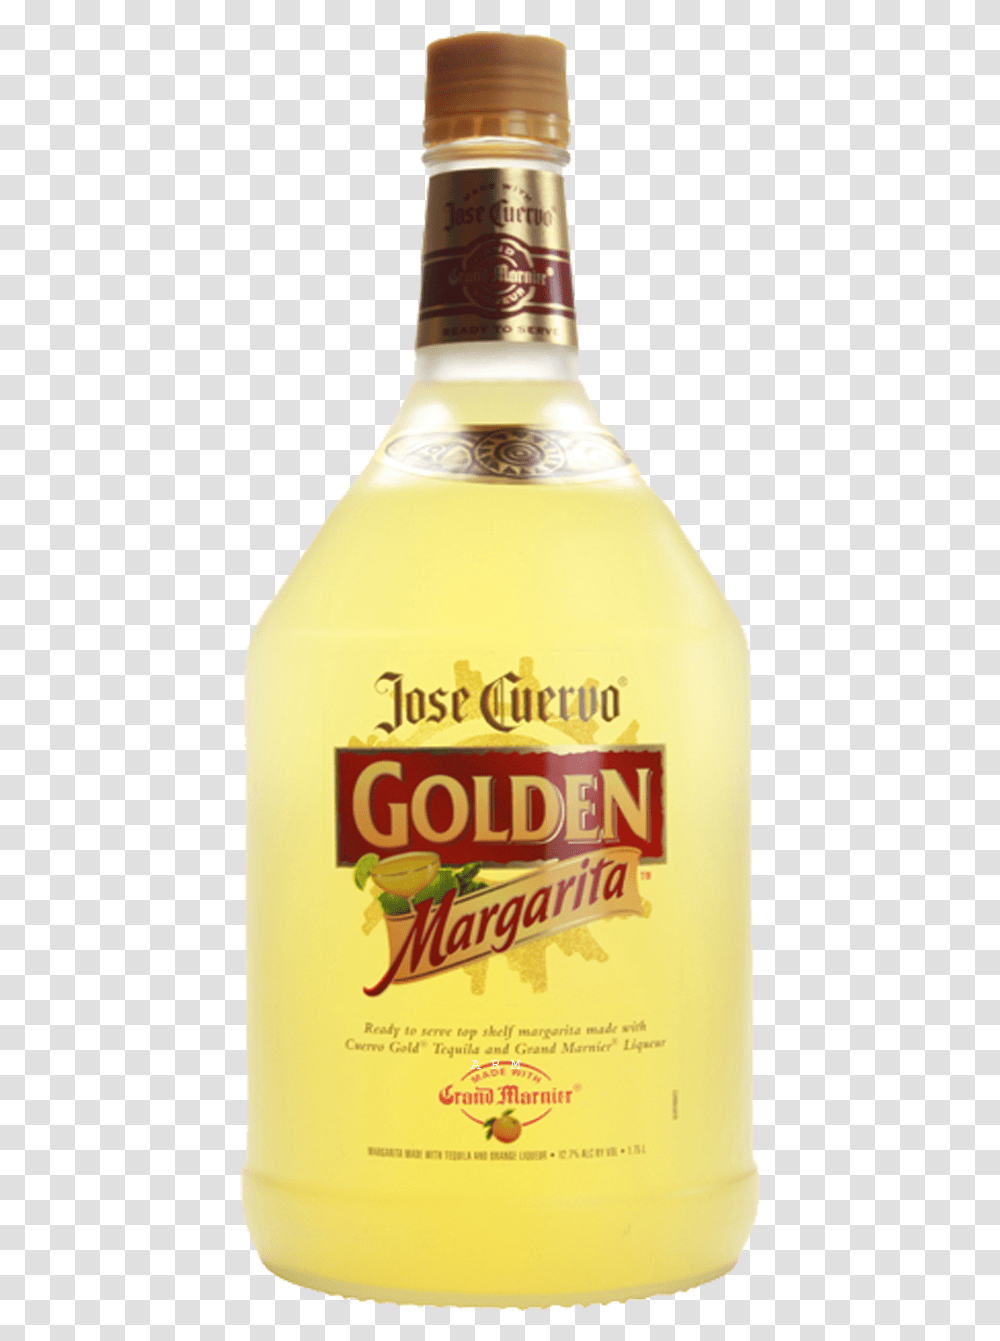 Jose Cuervo Rtd Golden Margarita 1.75 L, Bottle, Aftershave, Cosmetics, Beer Transparent Png